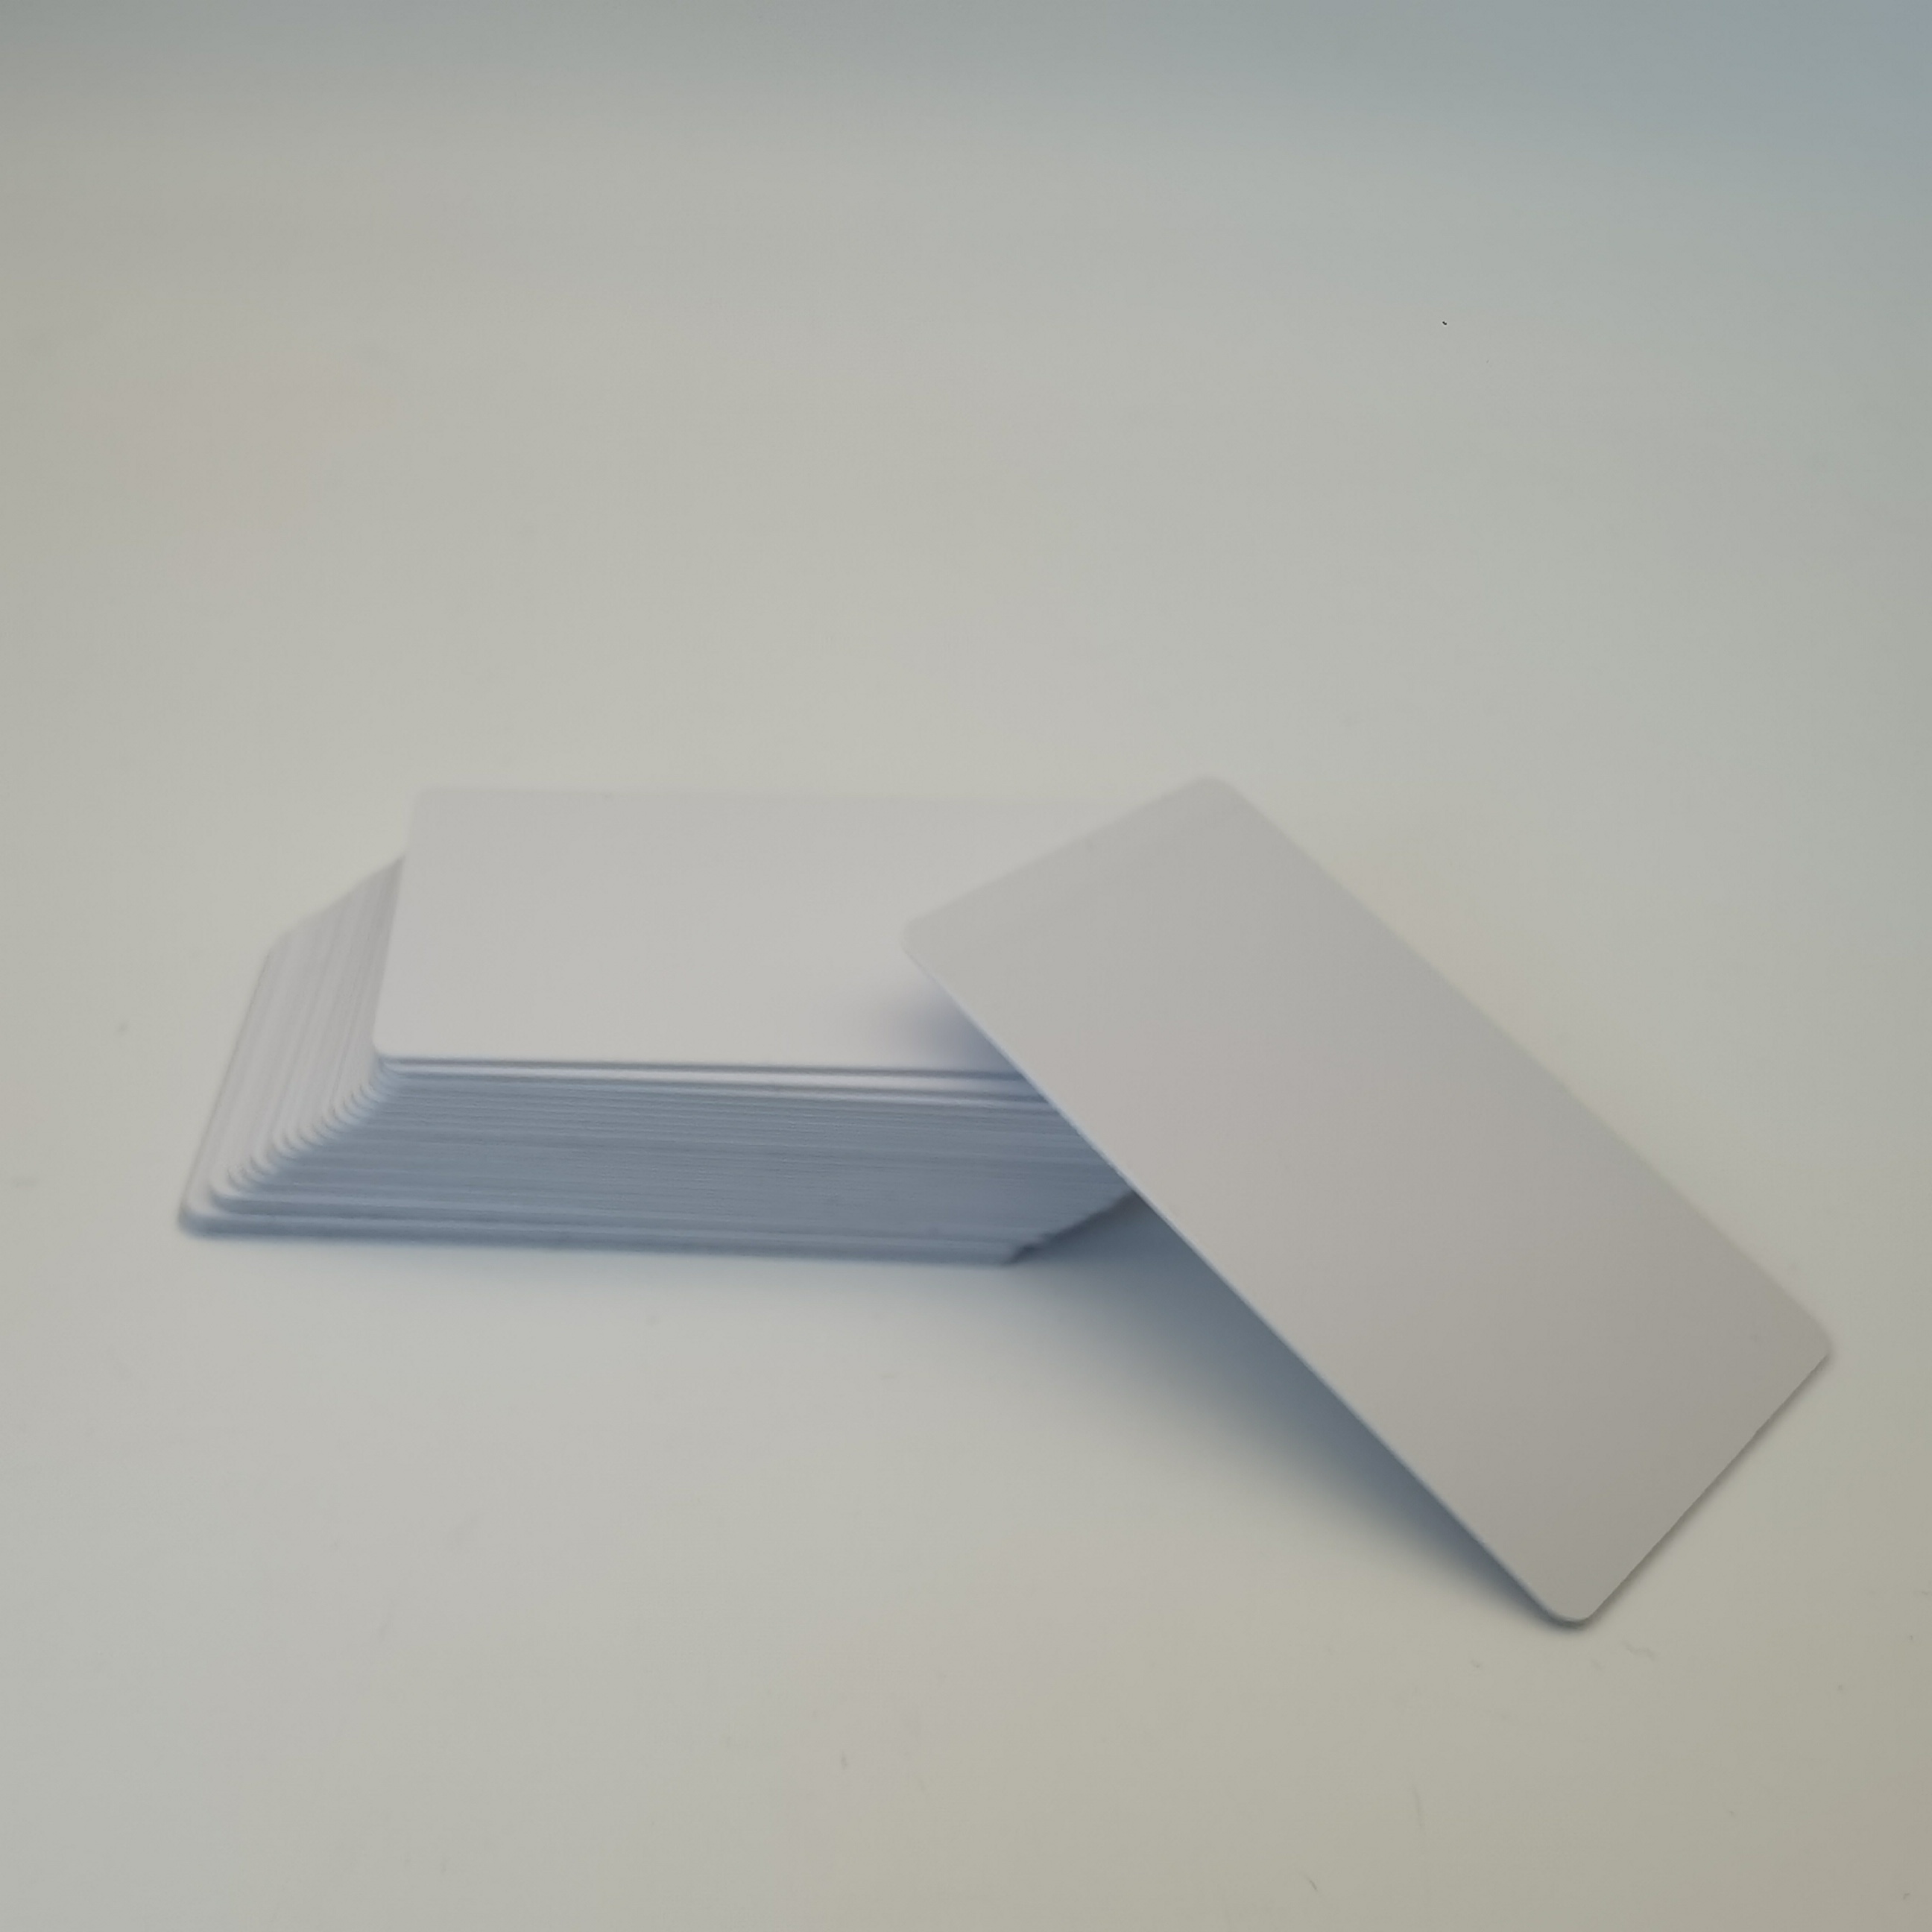 厂家直销MIFARE Plus系列PVC白卡印刷彩卡MIFARE Plus X 2K芯片